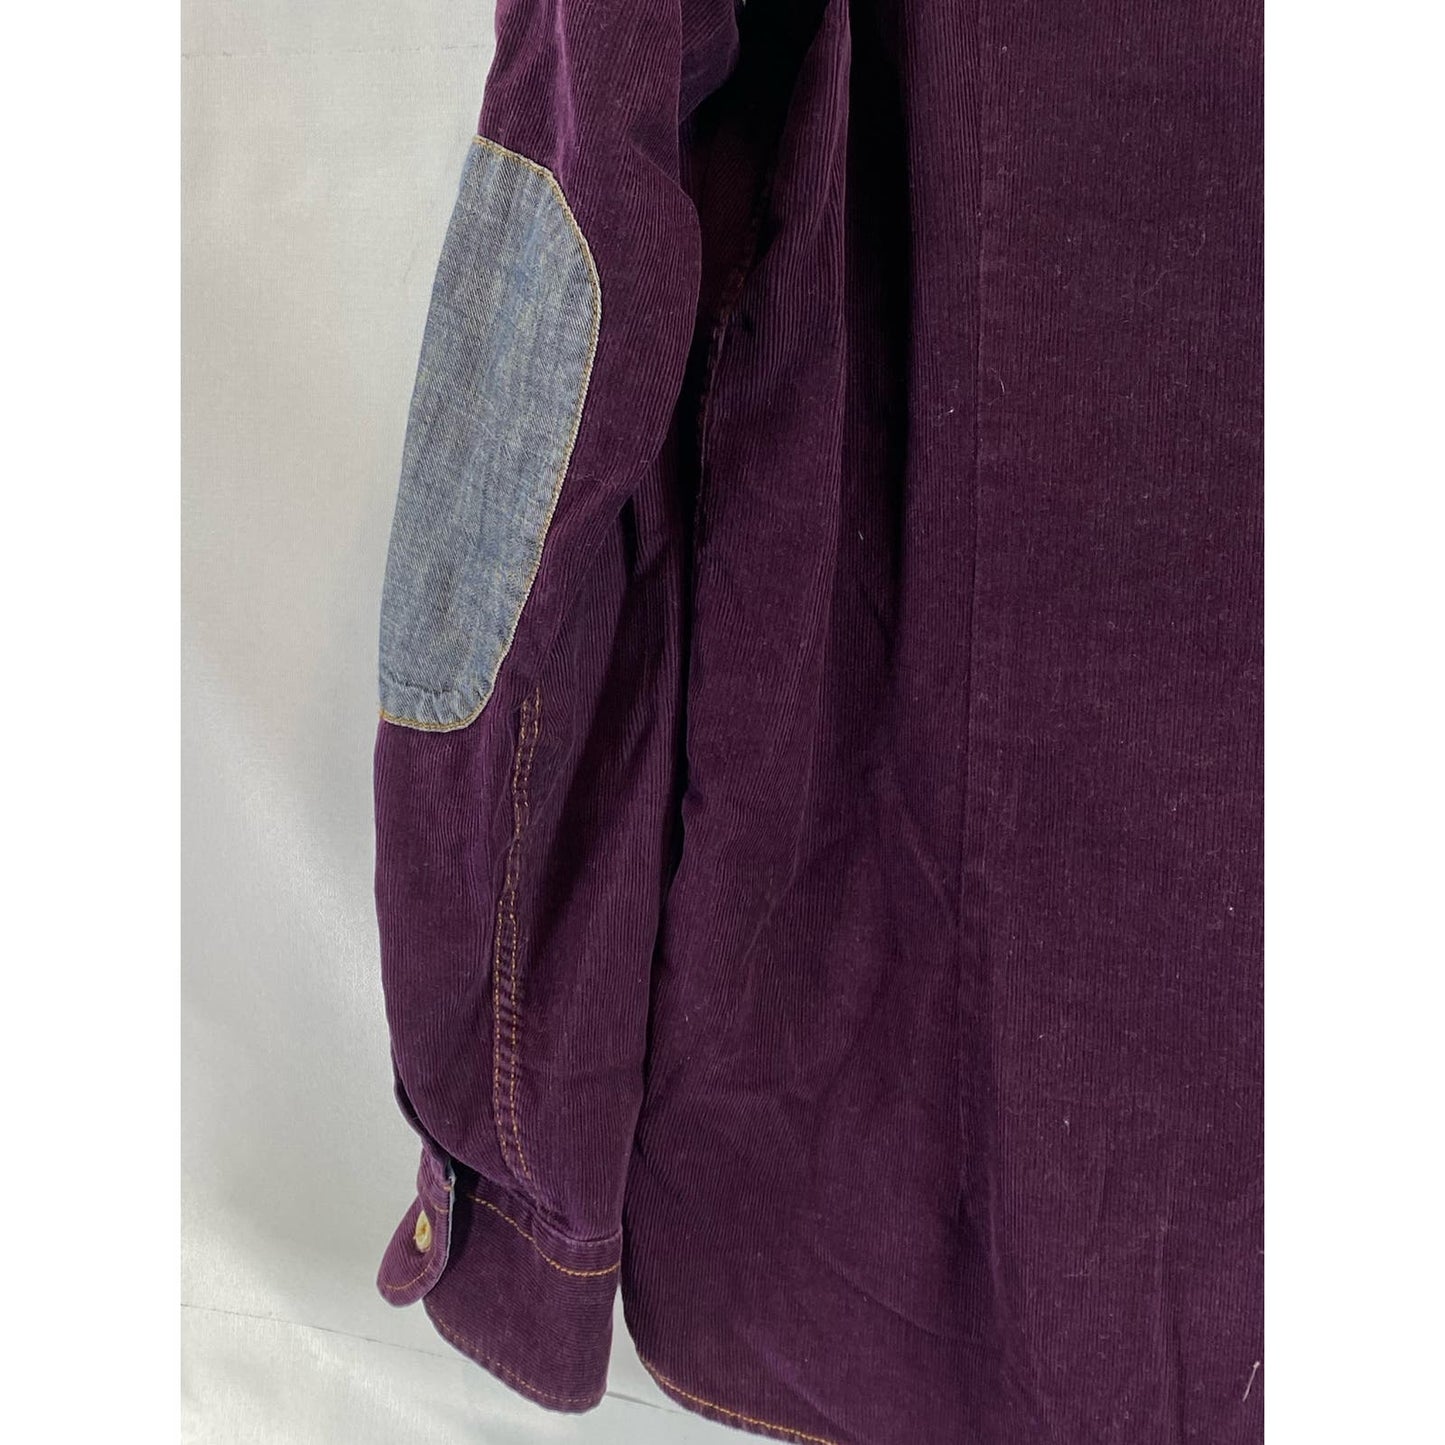 TED BAKER LONDON Men's Burgundy Corduroy Elbow-Patch Button-Up Shirt SZ 4(US/L)